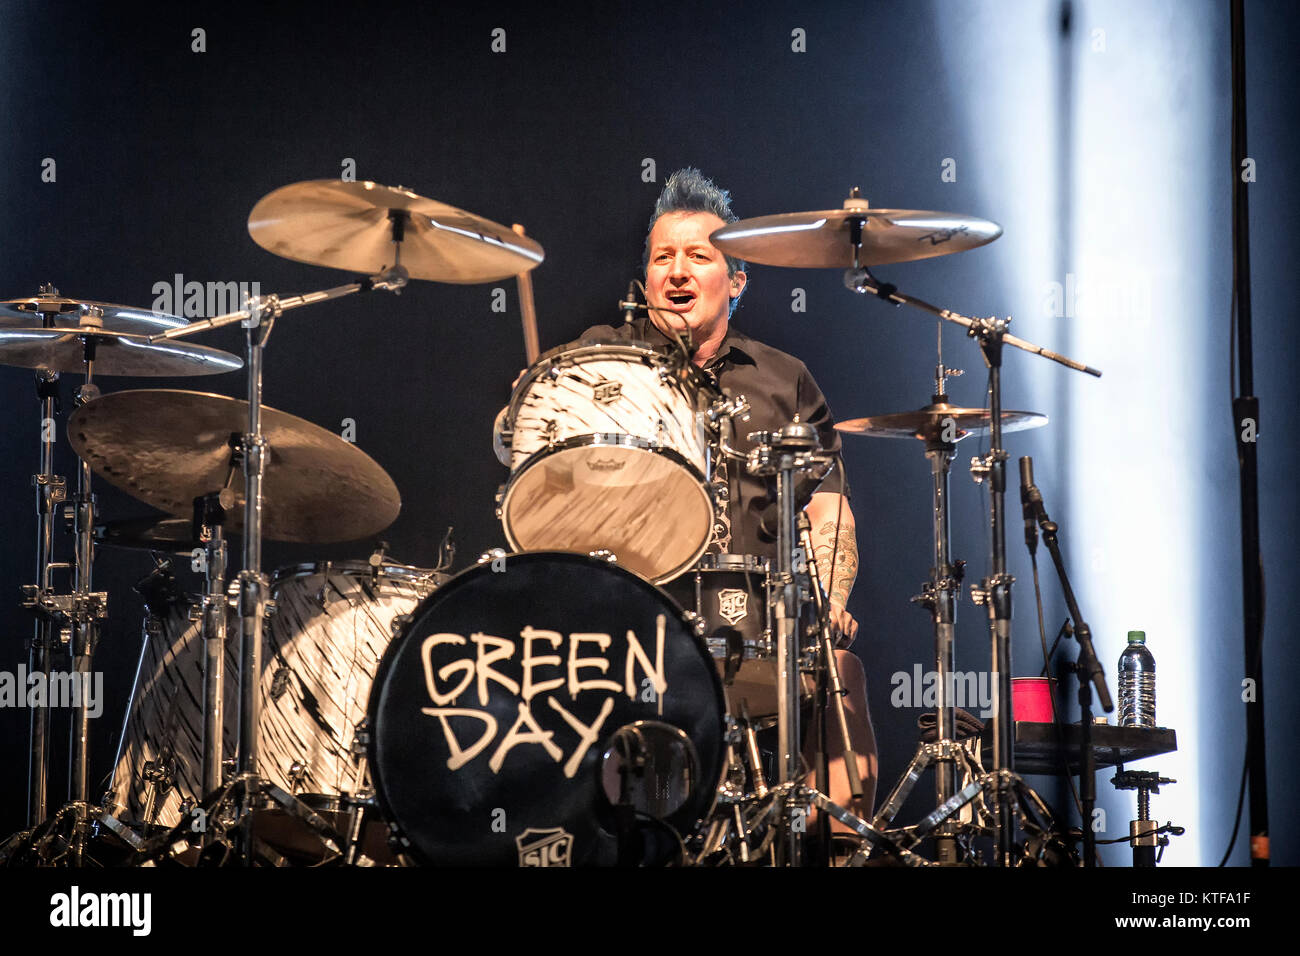 La American punk rock band Green Day esegue un concerto dal vivo a Oslo Spektrum. Qui il batterista Tré Cool è visto dal vivo sul palco. Norvegia, 25/01 2017. Foto Stock